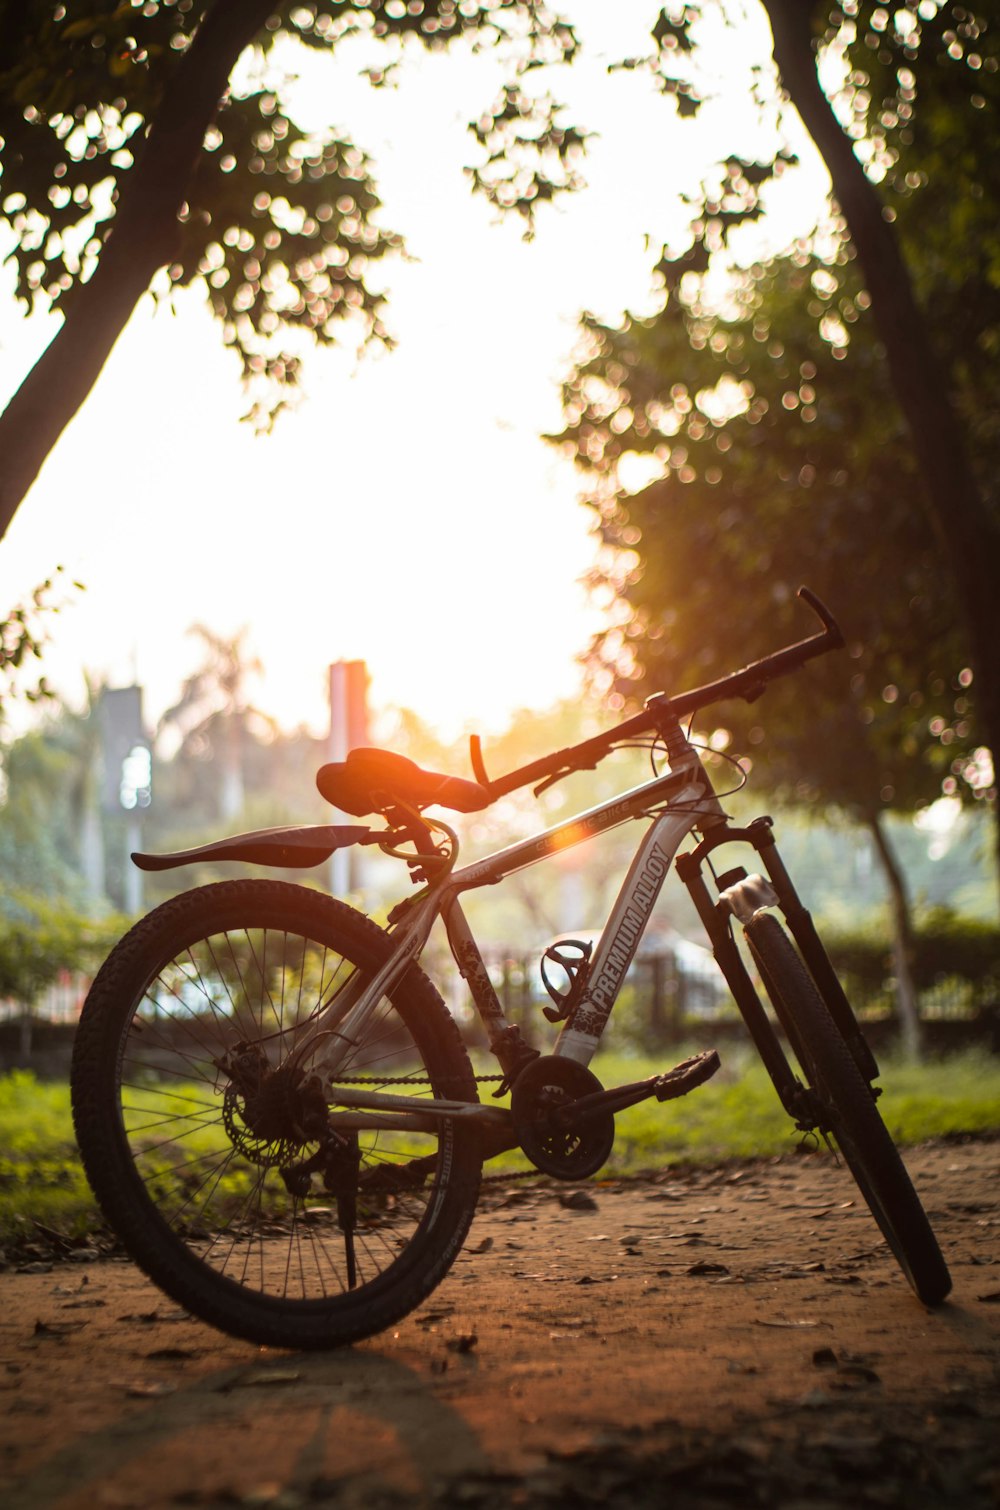 Một hình ảnh tuyệt đẹp về chiếc xe đạp đặt trên thảm cỏ xanh tươi. Với màu xanh rực rỡ và không khí trong lành, hình ảnh này sẽ đưa bạn đến với cảm giác tự do và thư giãn thật tuyệt vời trong mỗi chuyến đi xe đạp của mình.